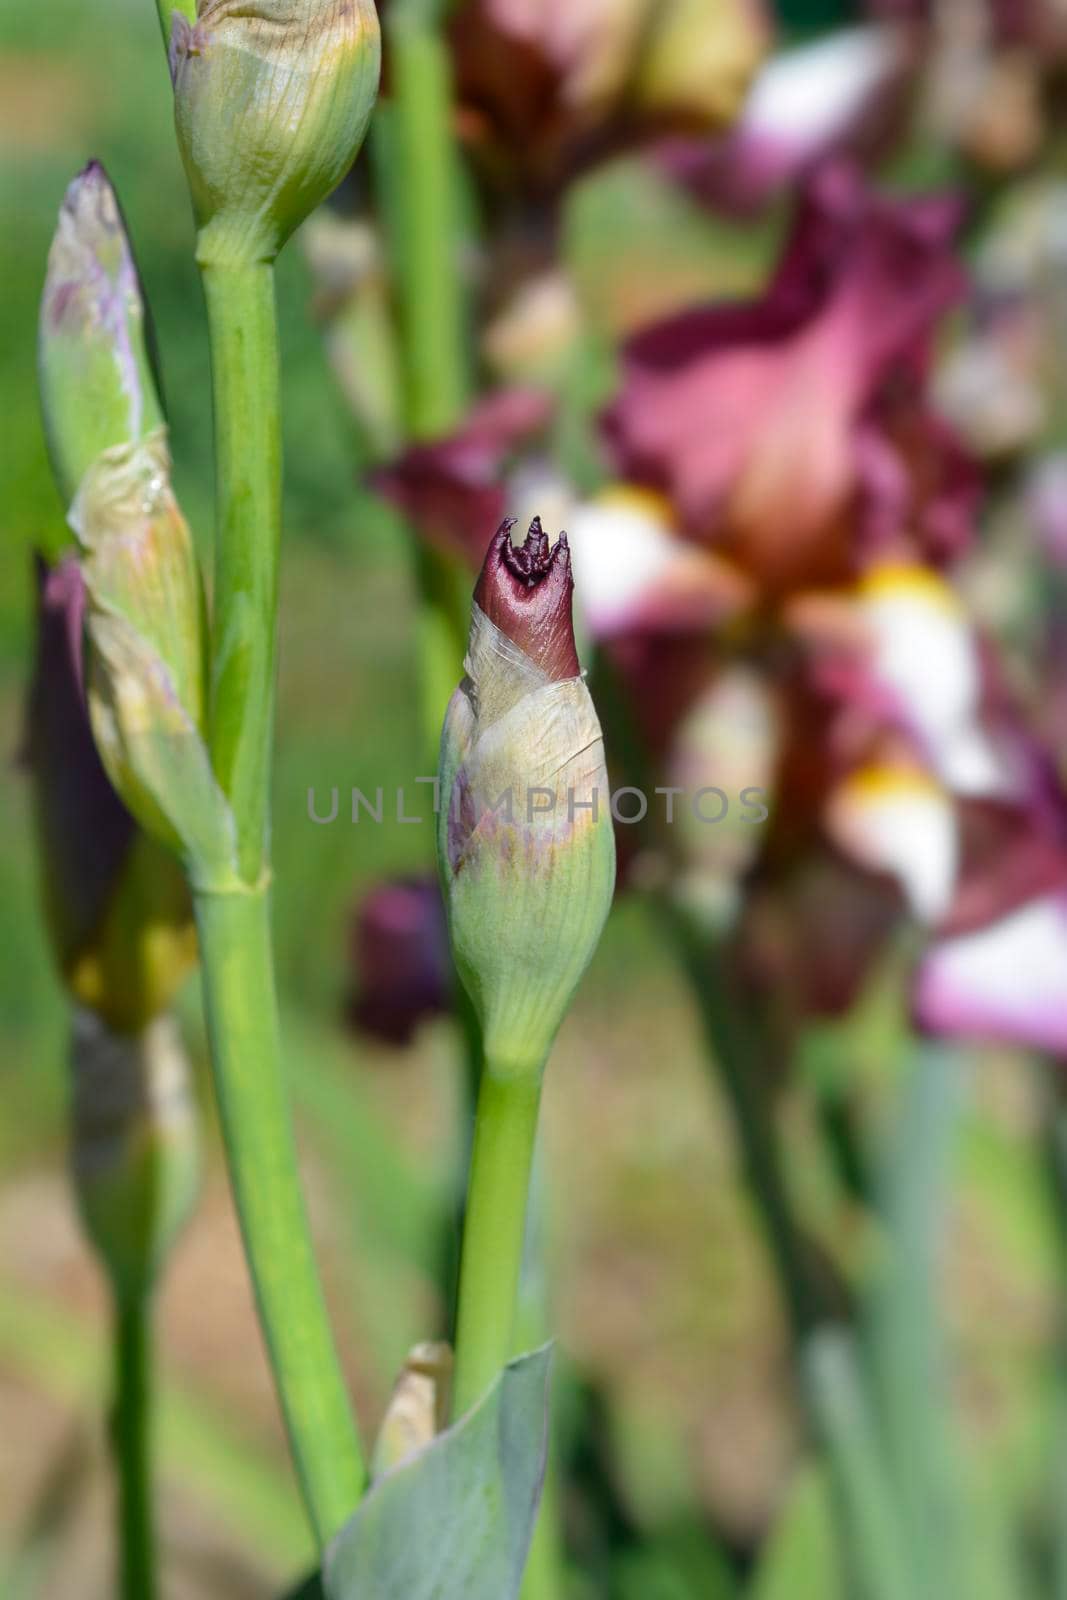 Tall bearded iris Crinoline flower bud - Latin name - Iris barbata elatior Crinoline